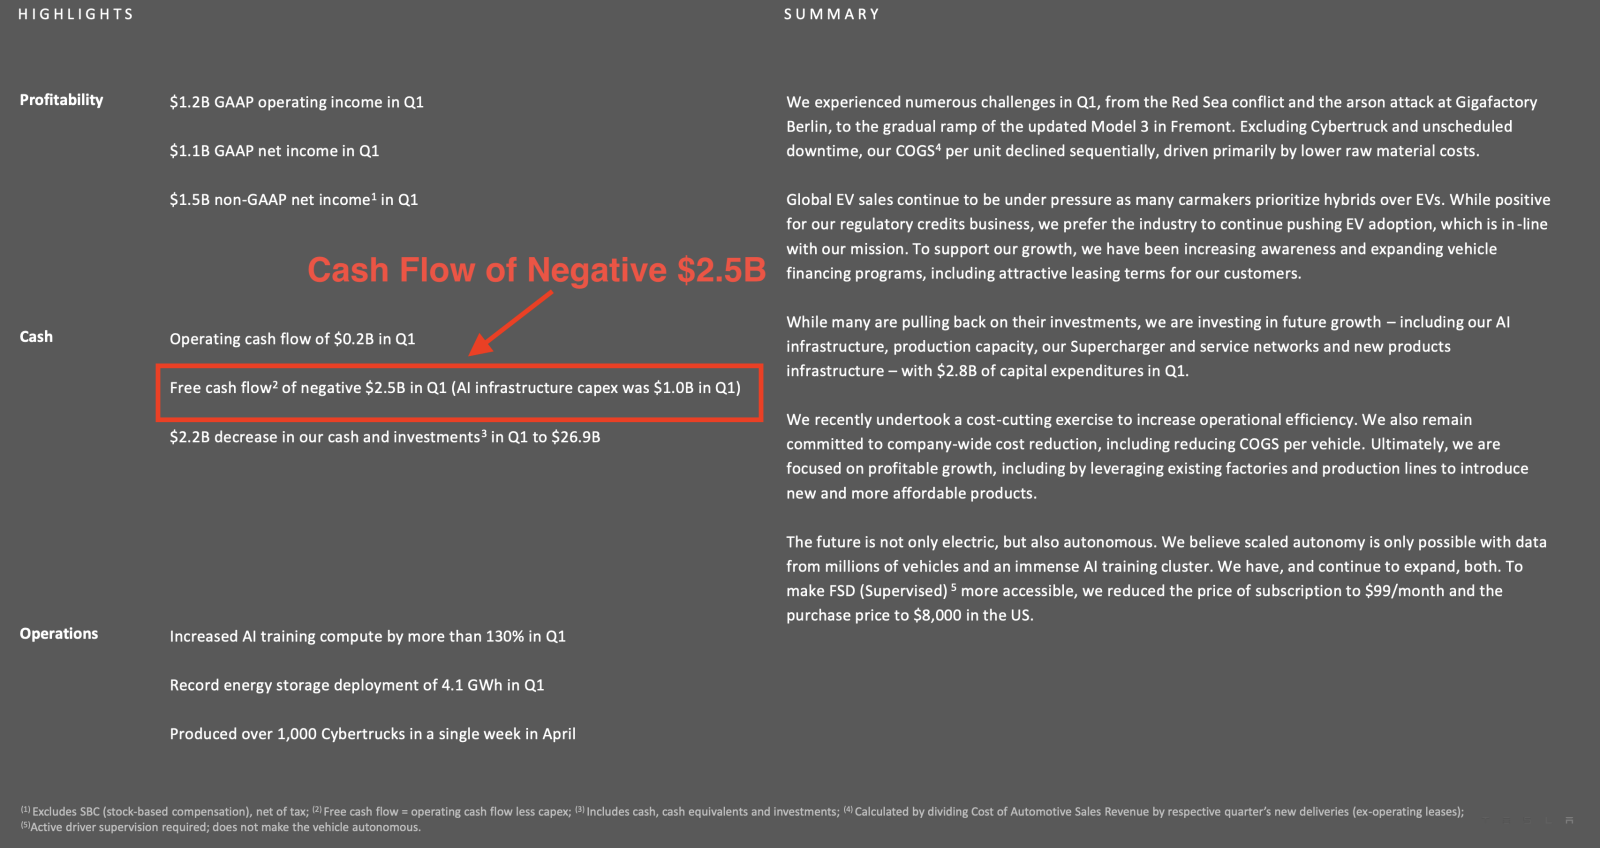 Cash Flow of Negative $2.5B